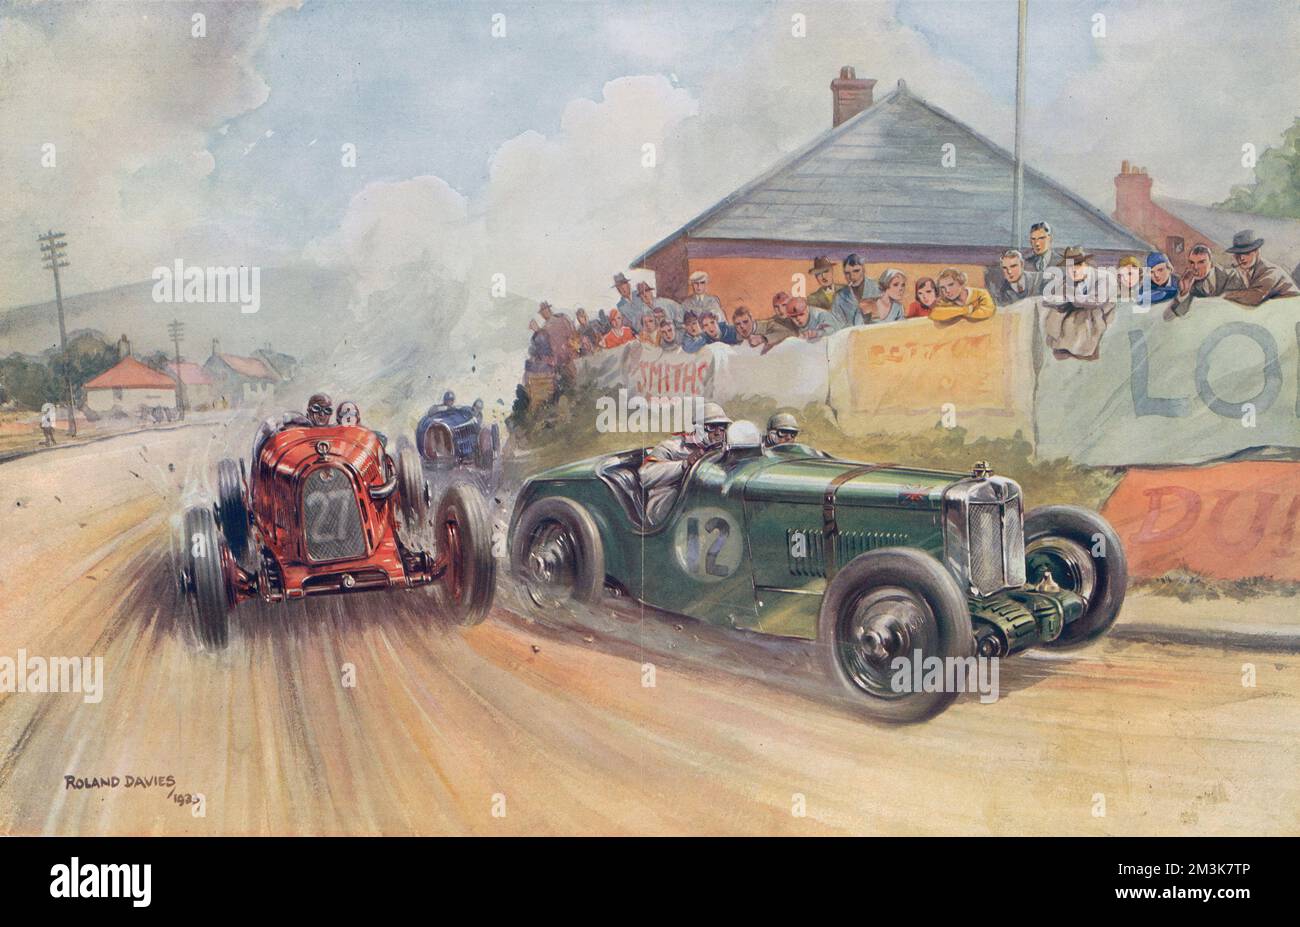 Eine Farbdarstellung von Roland Davies, die einen aufregenden Moment während des RAC Tourist Trophy Race auf dem Ards Circuit in Ulster im Jahr 1933 darstellt. Das Bild zeigt einen roten Italiener Alfa Romeo, der sich auf einen britischen Rennwagen einholt Im Jahr 1933 gab es dreißig Einsendungen für das Rennen. Die Ards-Strecke musste dreißig Runden fahren, wobei die Häuser auf der Strecke sanft gesäumt wurden, um Schäden an der sogenannten „haarsträubenden“ Fahrt zu vermeiden. Datum: 13.. September 1933 Stockfoto